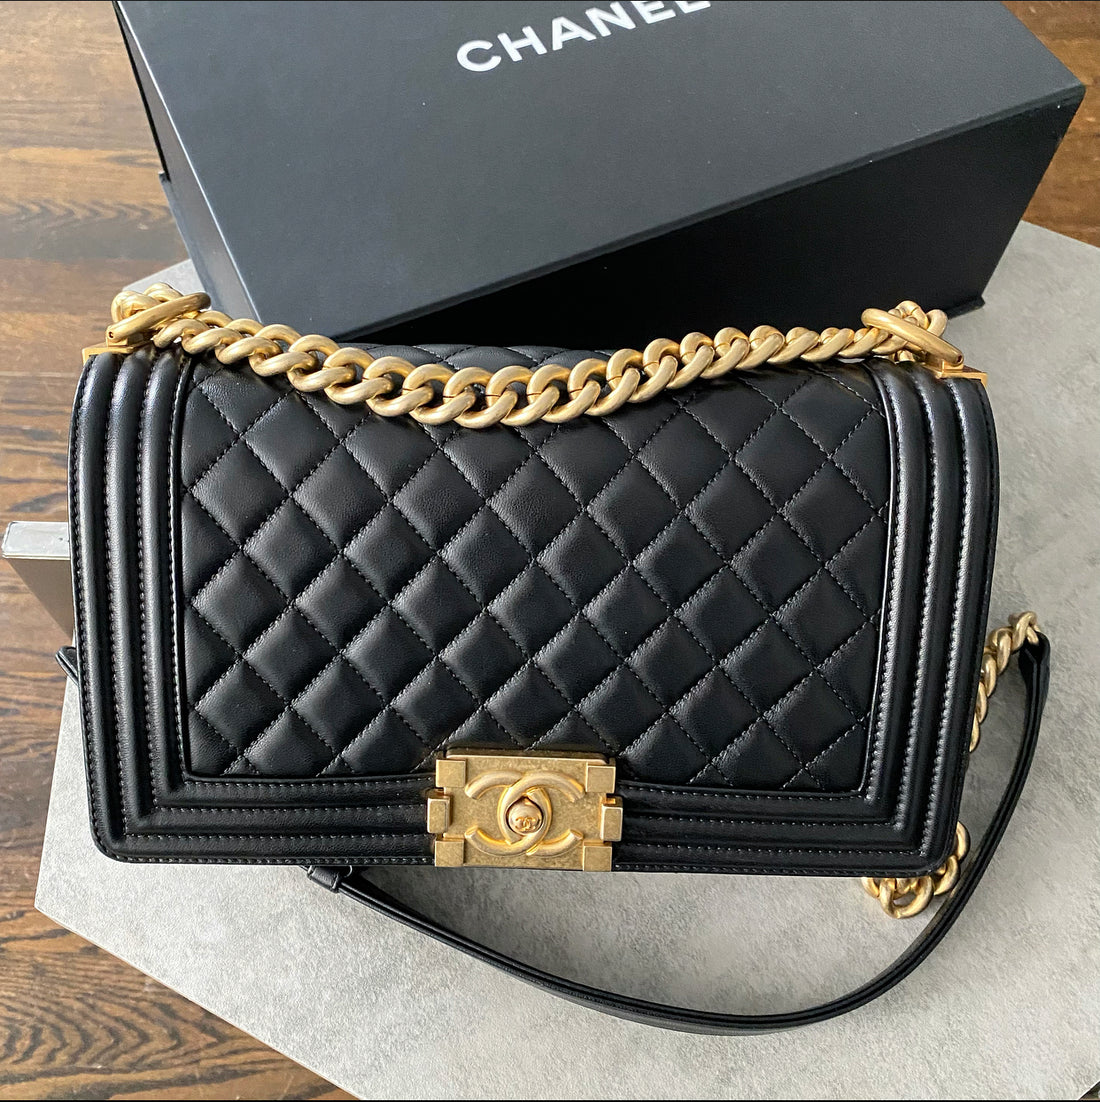 Chanel Black Lambskin Medium Le Boy Bag - GHW